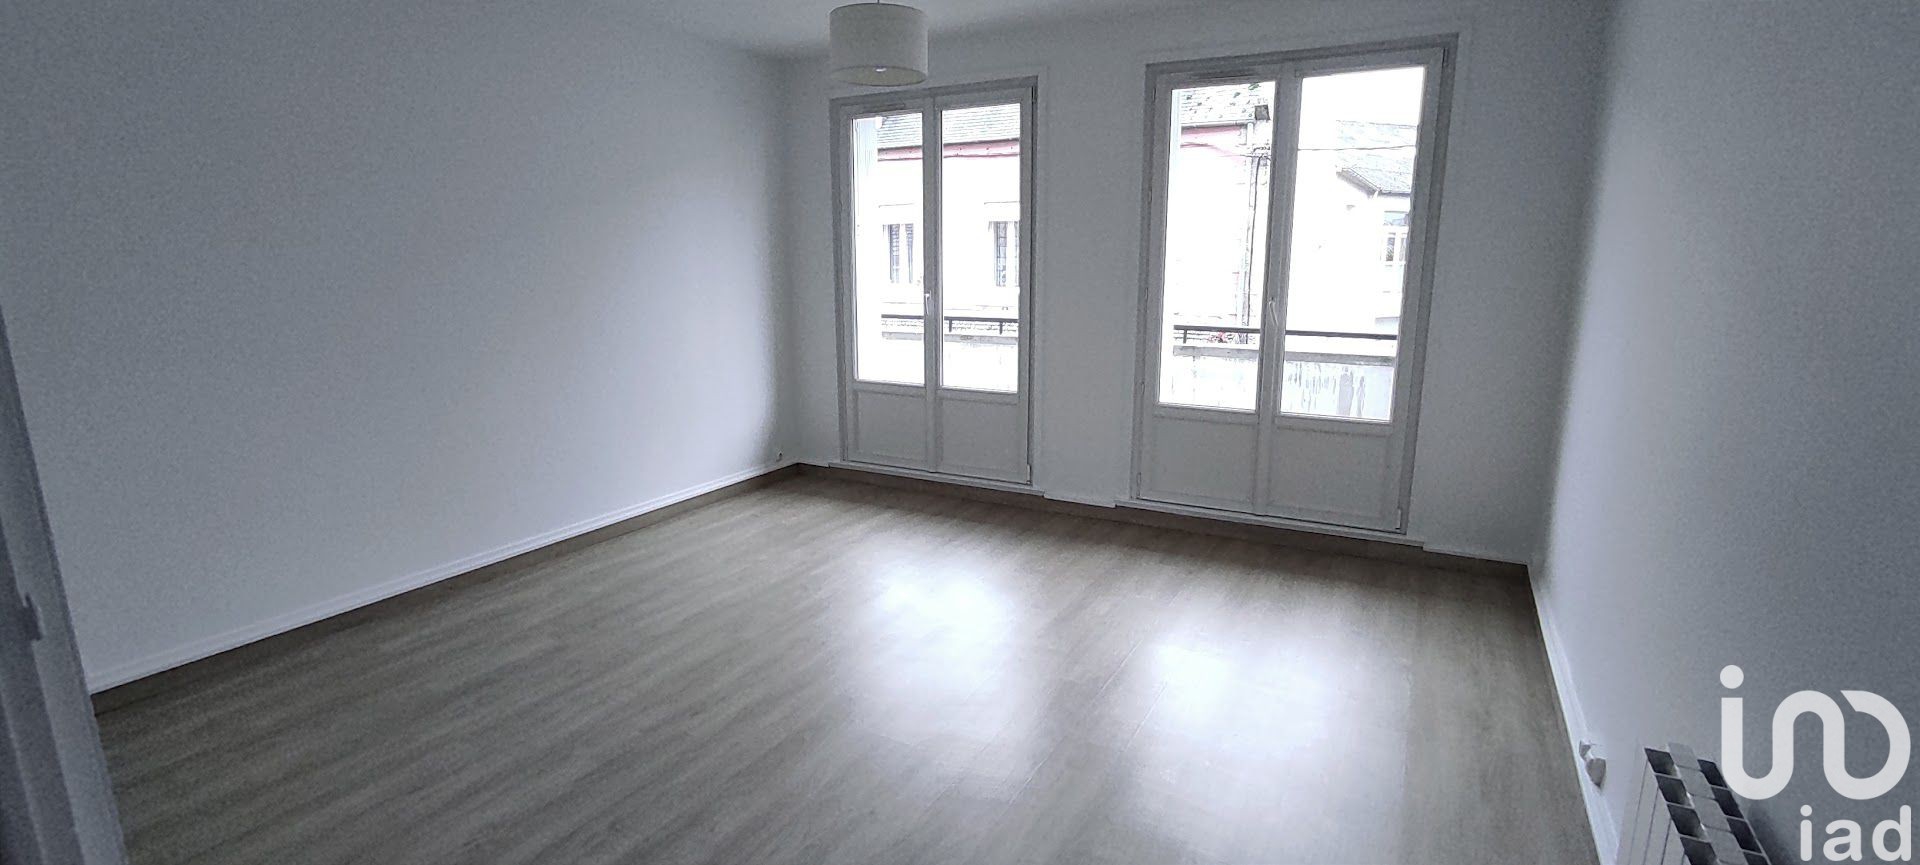 Location appartement 4 pièces 72 m2